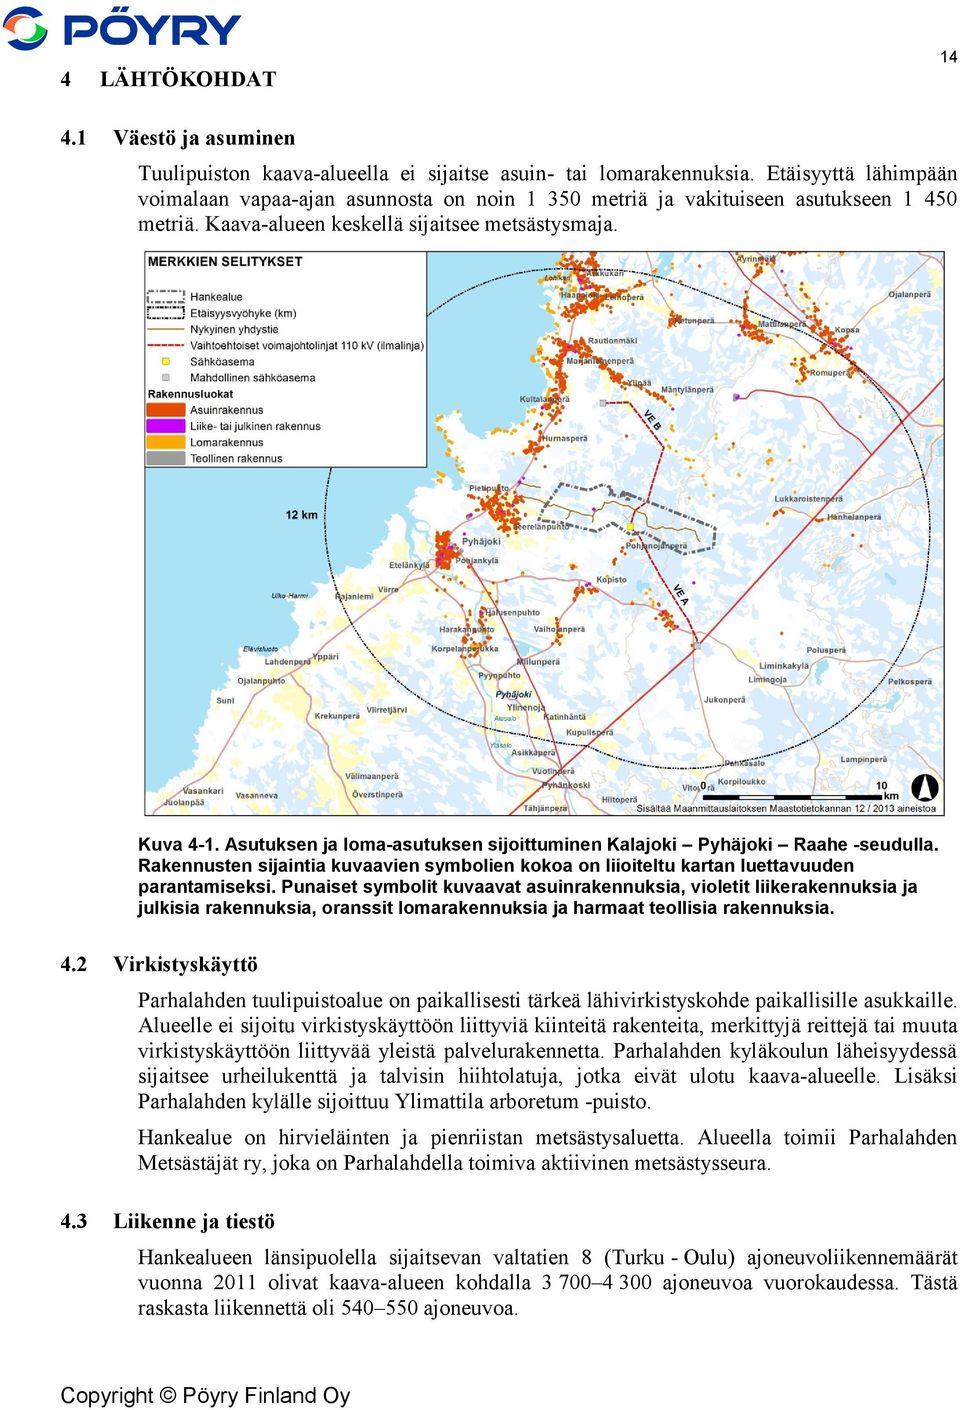 Asutuksen ja loma-asutuksen sijoittuminen Kalajoki Pyhäjoki Raahe -seudulla. Rakennusten sijaintia kuvaavien symbolien kokoa on liioiteltu kartan luettavuuden parantamiseksi.